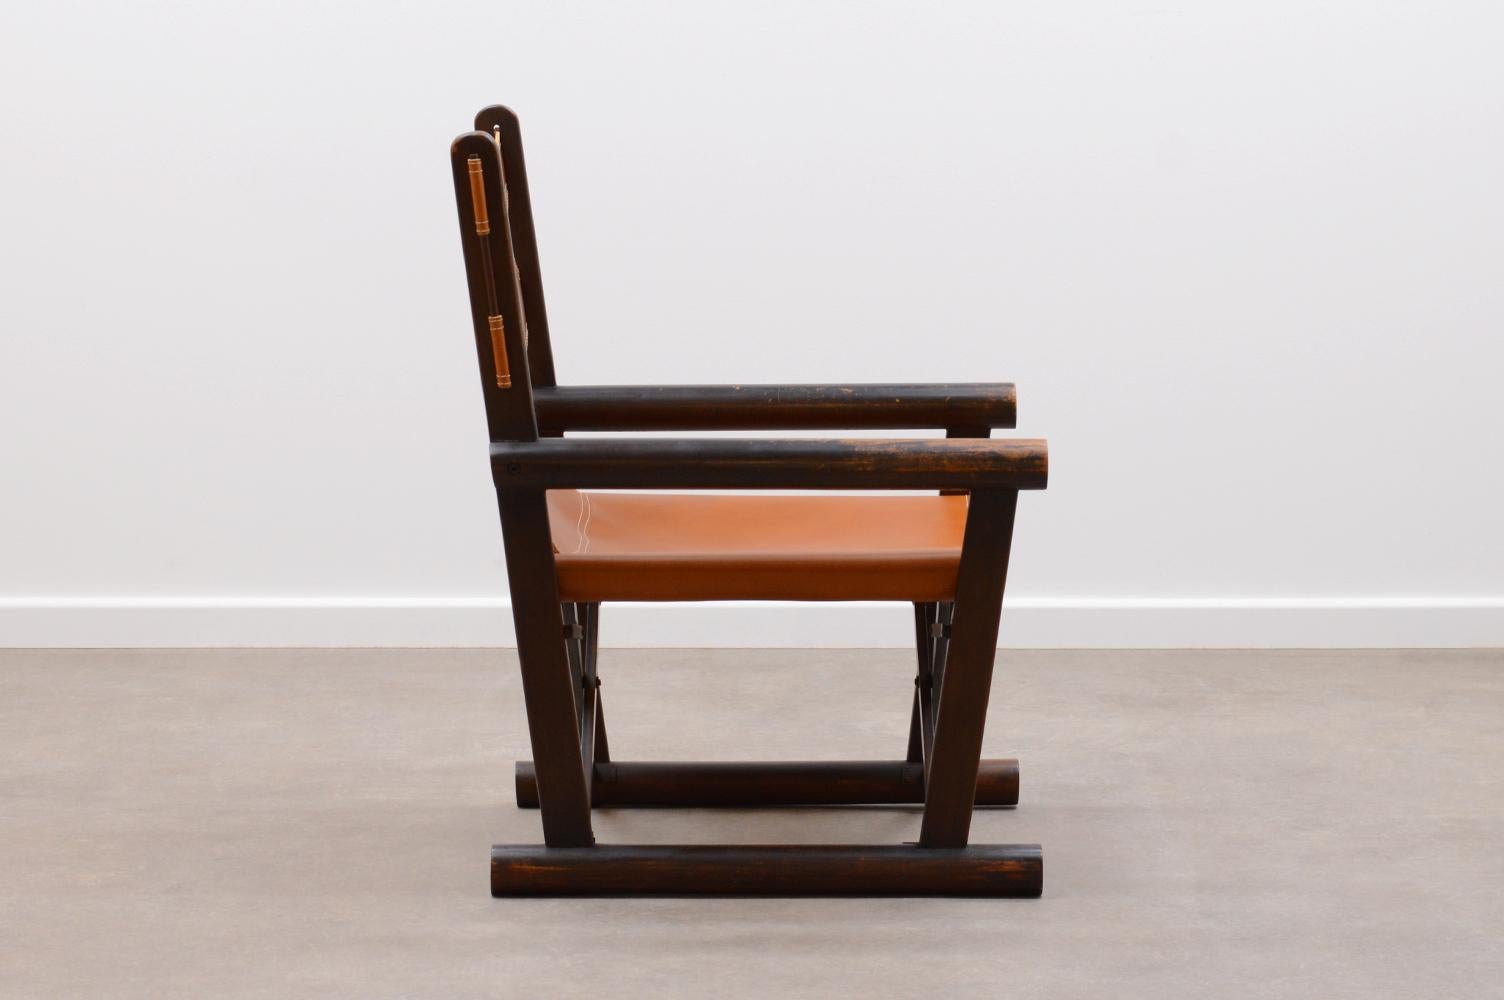 Mid-Century Modern PL22 chair by Carlo Hauner & Martin Eisler for OCA, Brazil 60s.